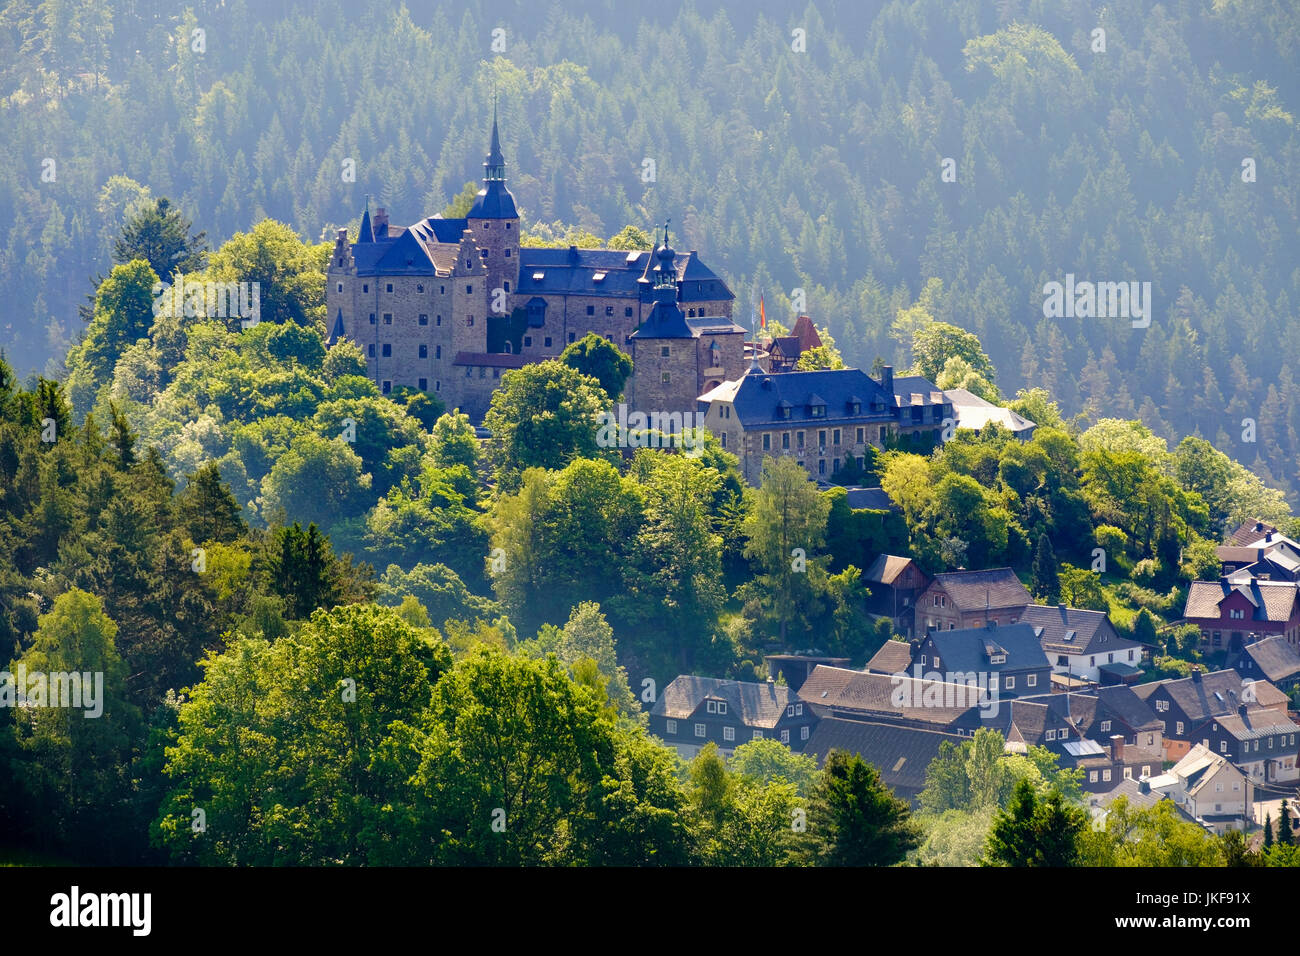 Burg Lauenstein, Dorf Lauenstein bei Ludwigsstadt, Frankenwald, Oberfranken, Franken, Bayern, Deutschland Stock Photo